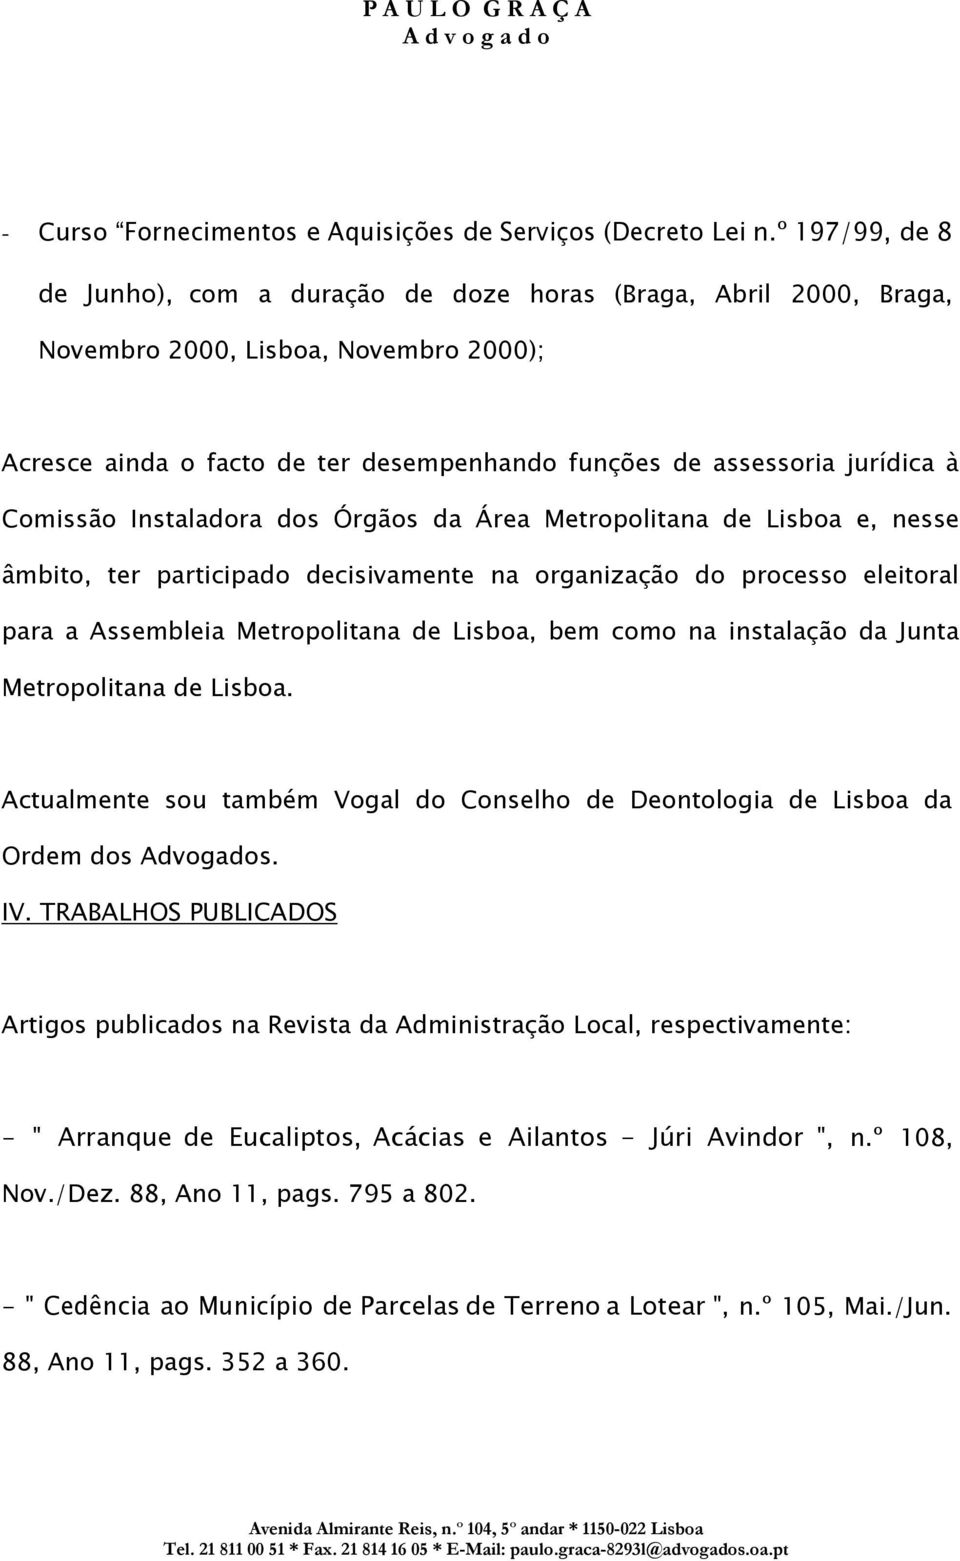 Comissão Instaladora dos Órgãos da Área Metropolitana de Lisboa e, nesse âmbito, ter participado decisivamente na organização do processo eleitoral para a Assembleia Metropolitana de Lisboa, bem como